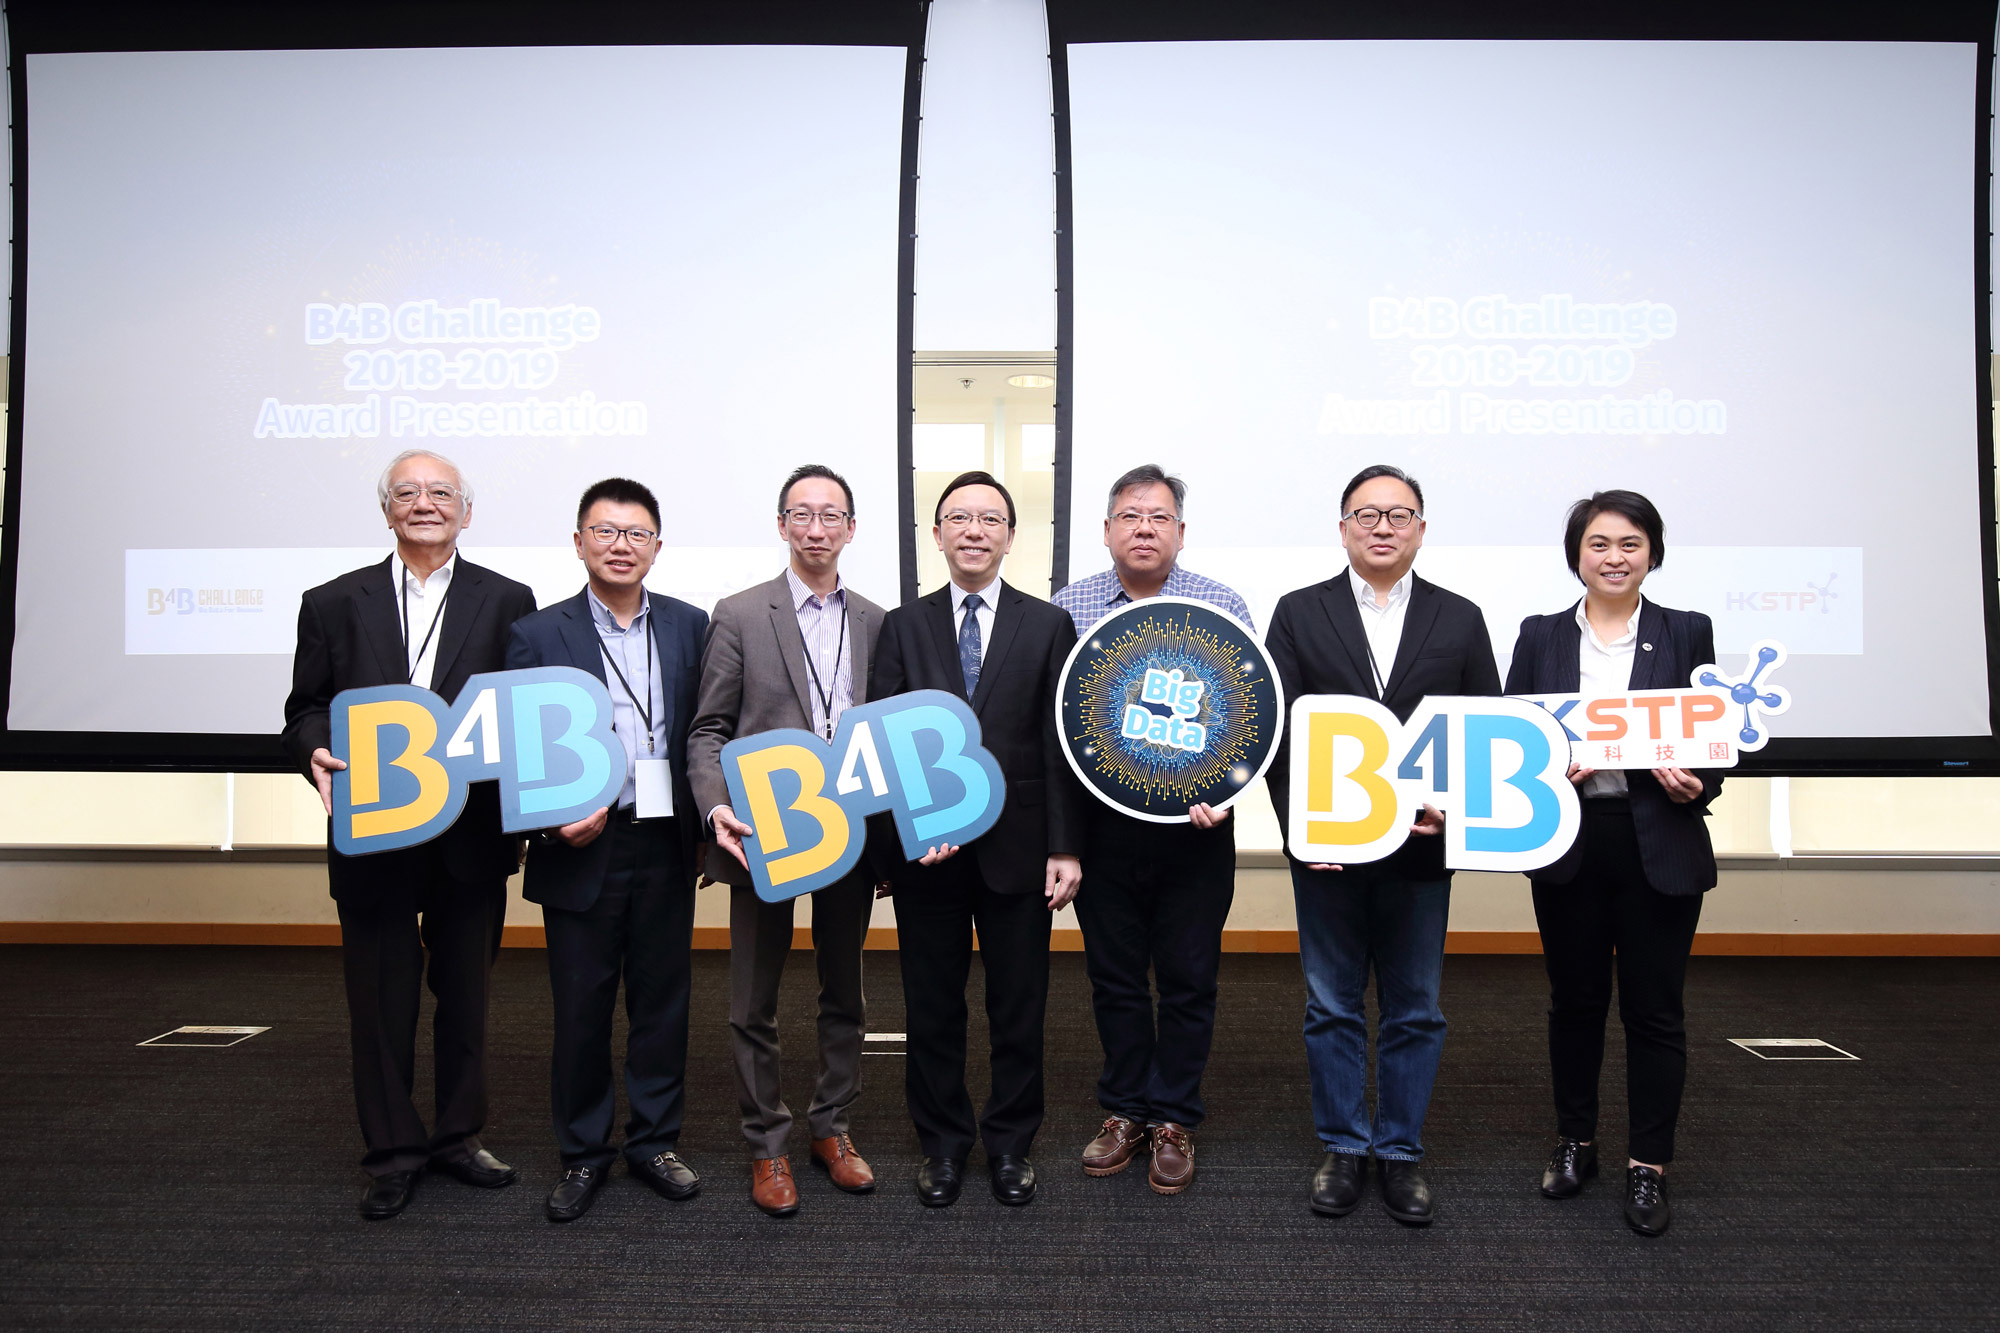 政府资讯科技总监林伟乔先生（中）于「B4B大数据应用挑战赛」颁奖典礼与嘉宾合照